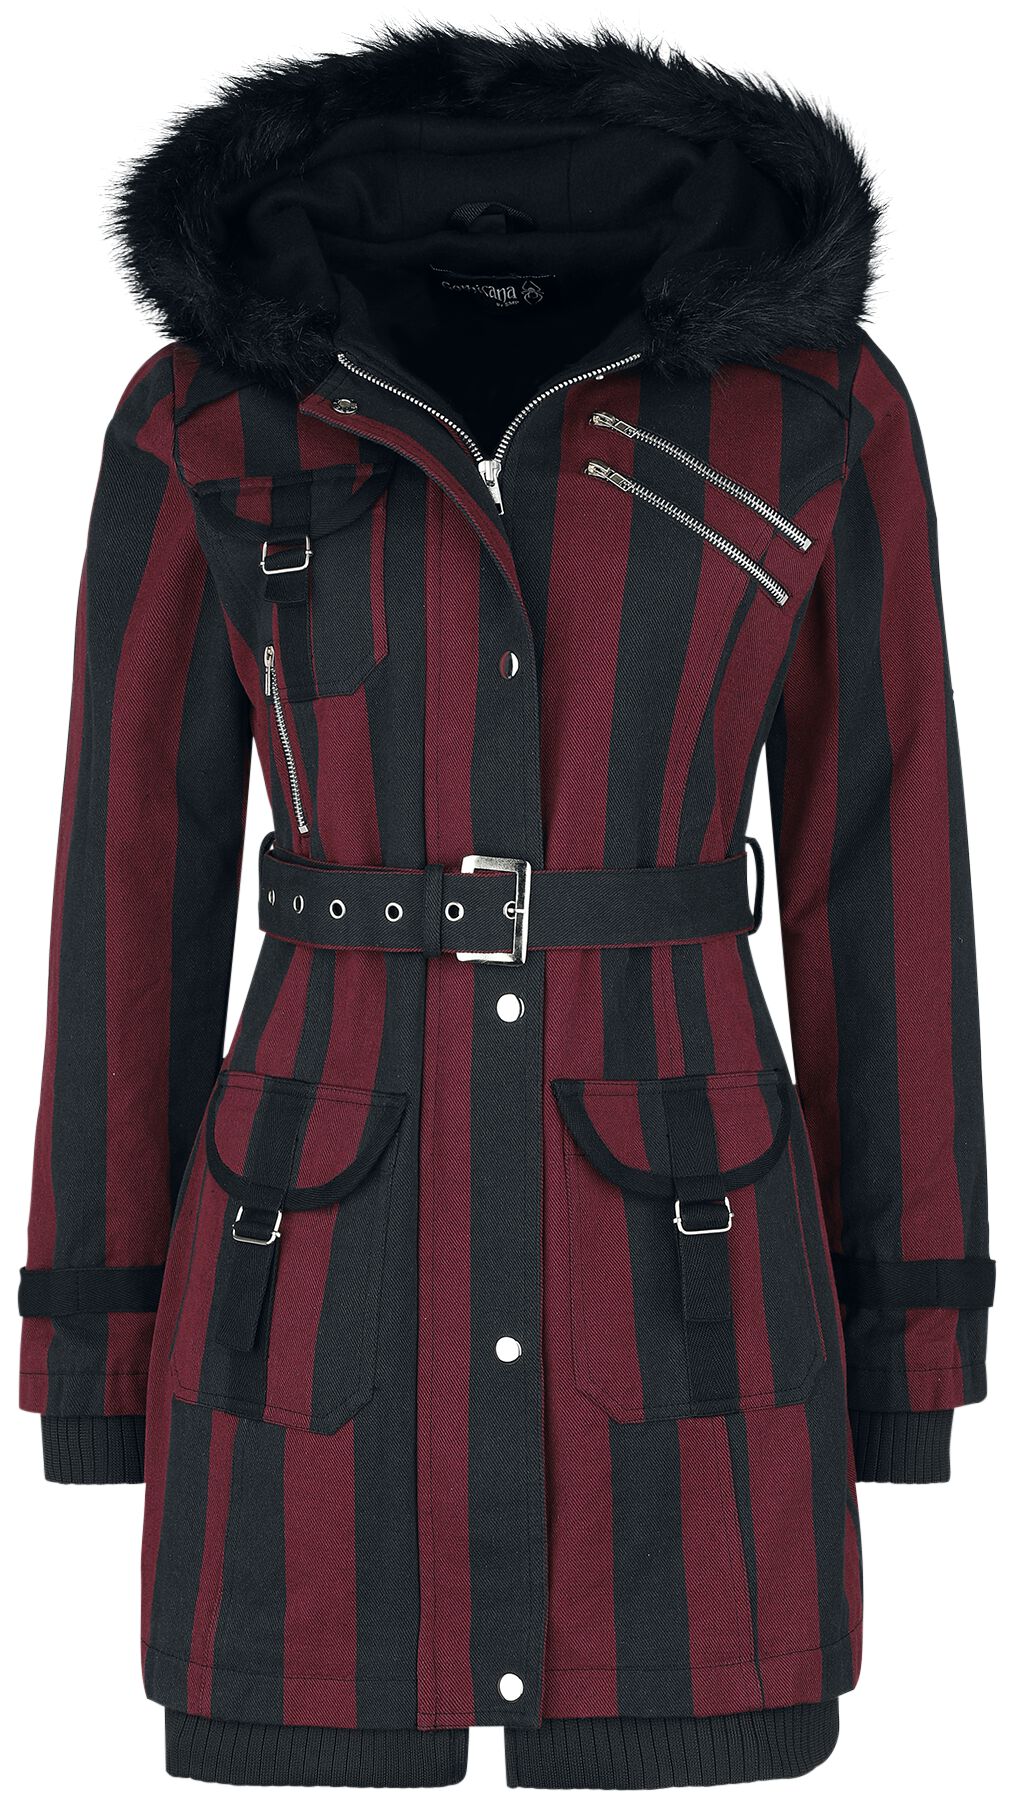 Gothicana by EMP Winterjacke - Multi Pocket Jacket - XS bis 5XL - für Damen - Größe L - schwarz/rot